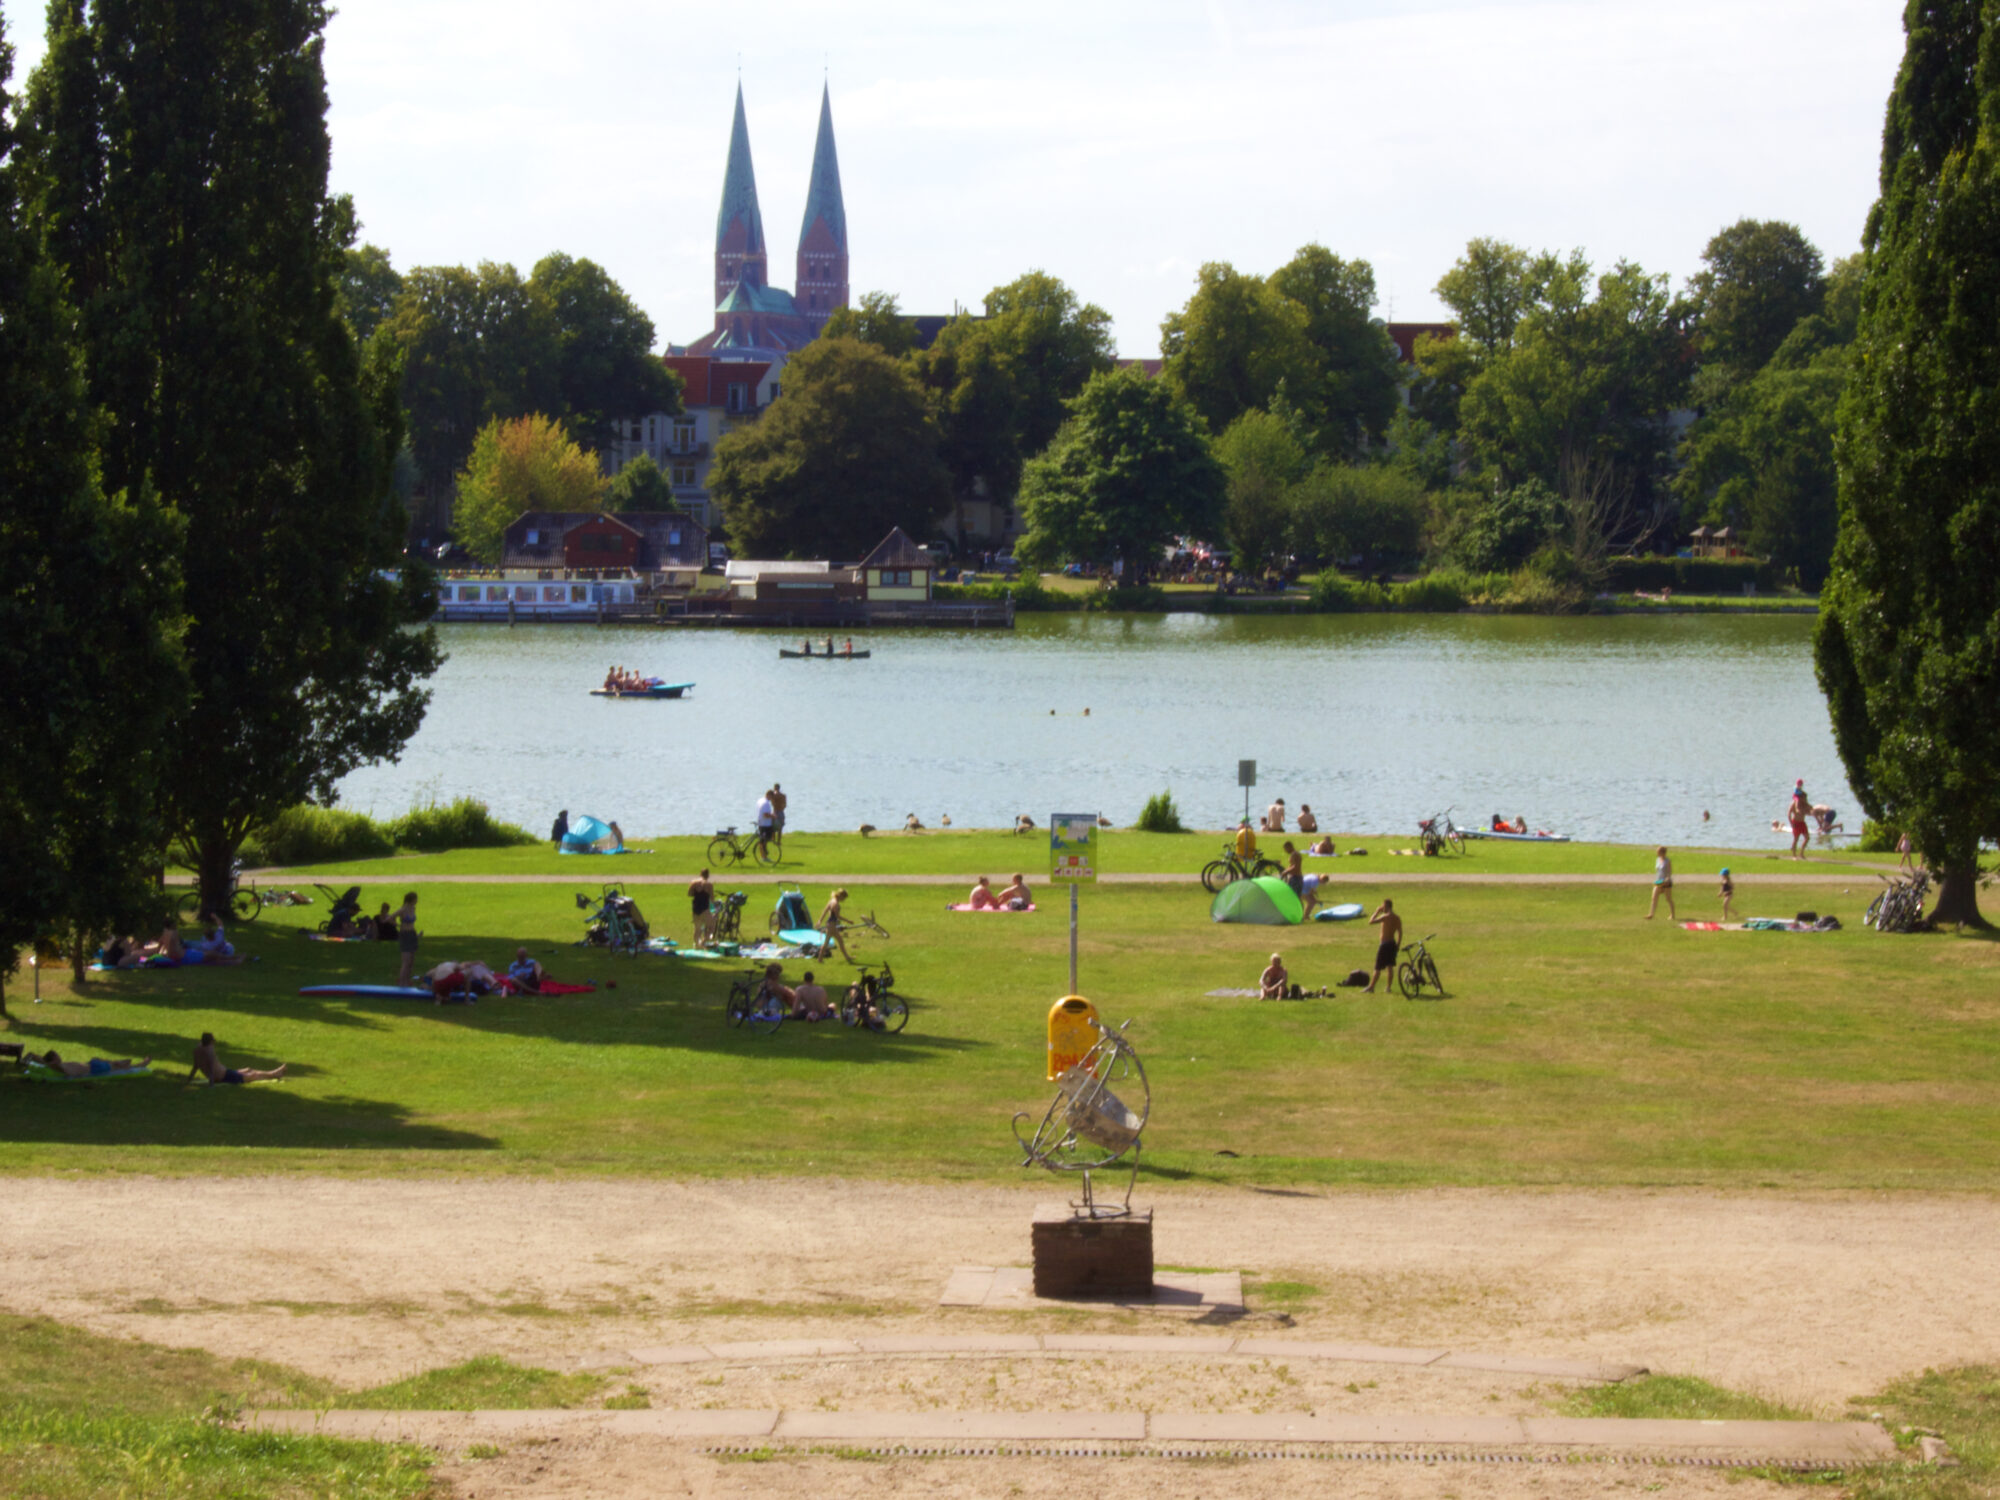 Picknick und Picknicken in Lübeck im Drägerpark